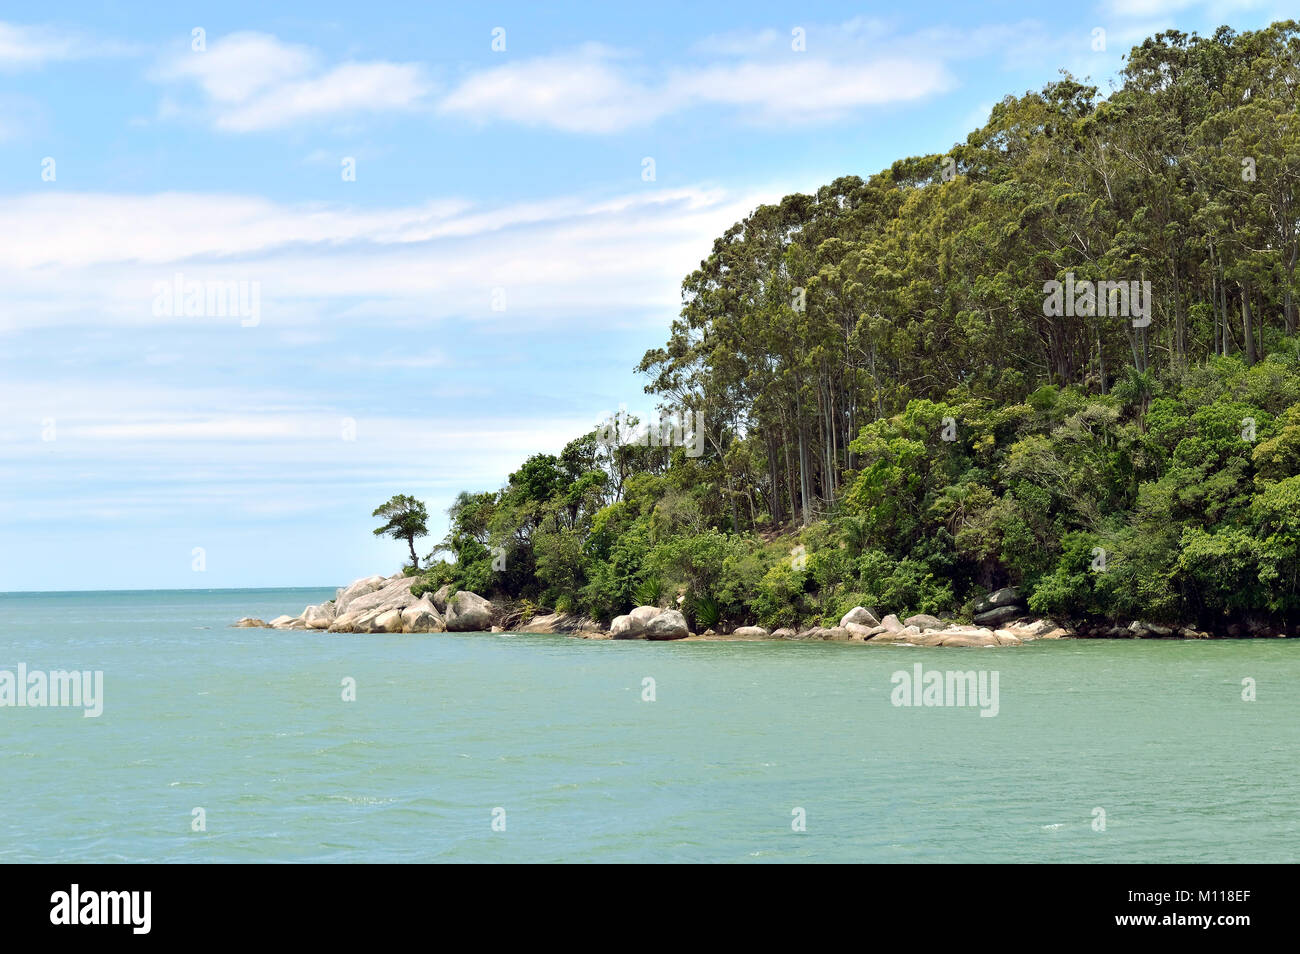 Scena tropicale con una verde collina con alberi, Oceano Atlantico e cielo blu Foto Stock